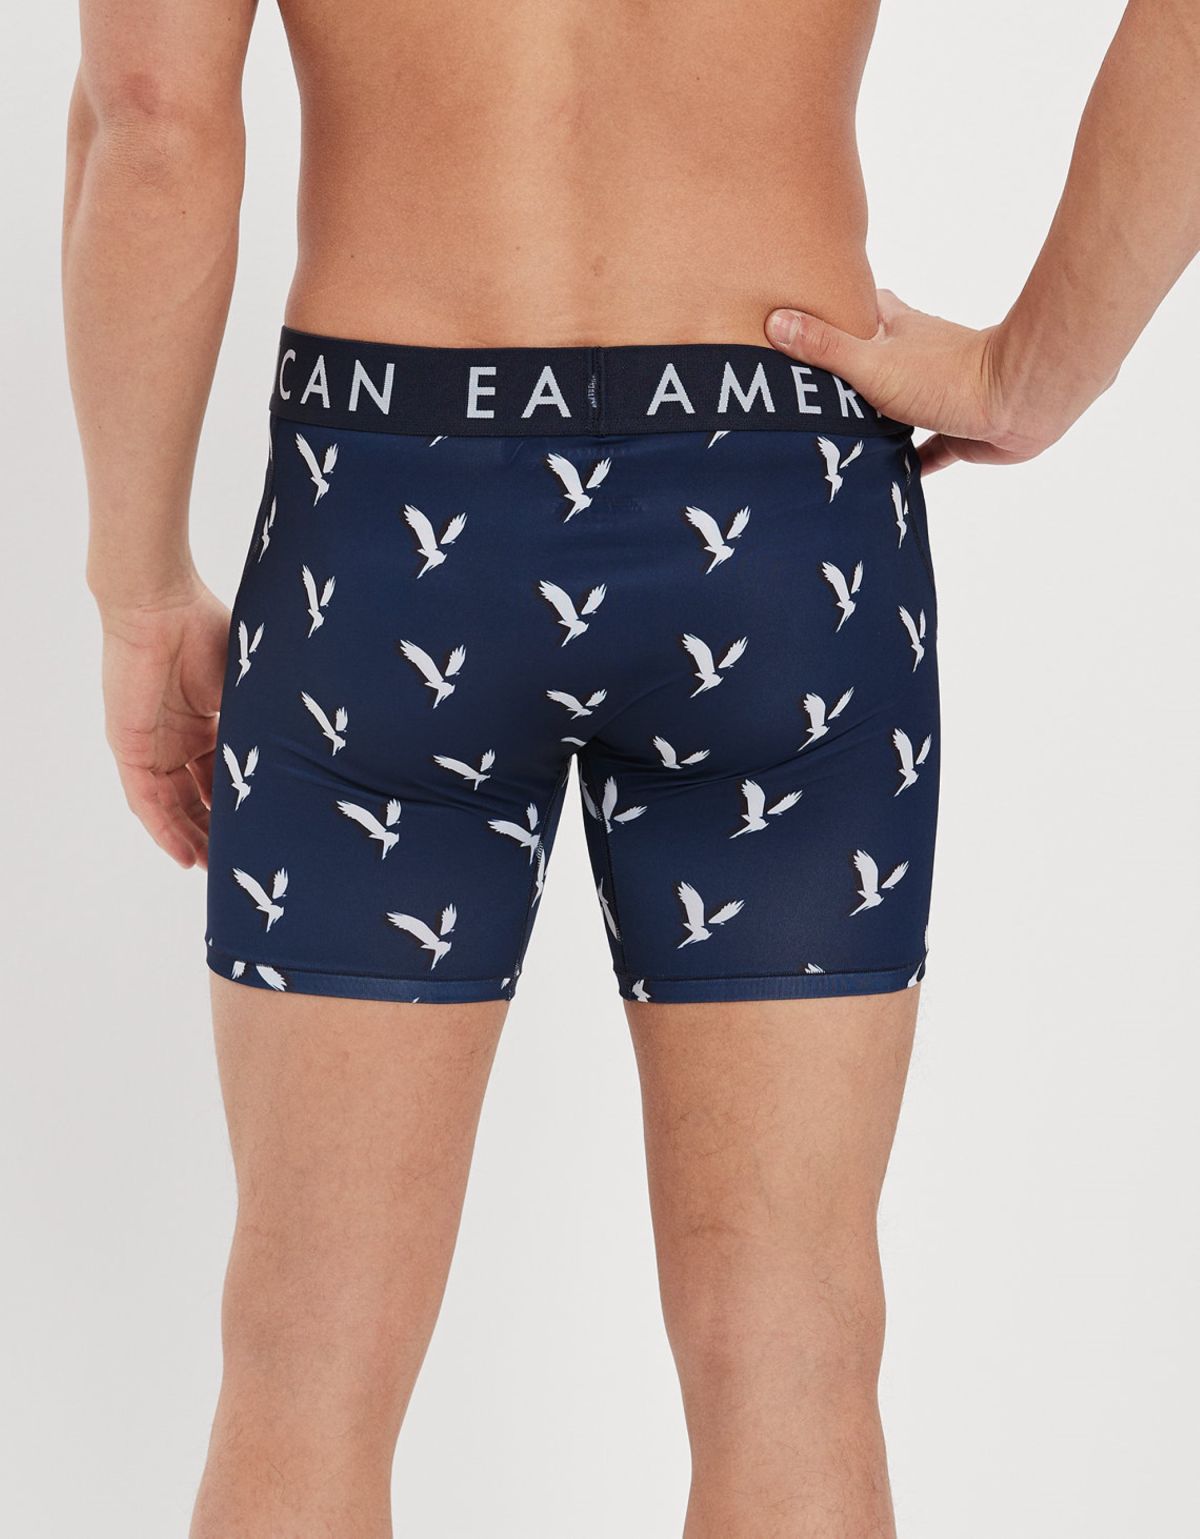  בוקסר בהדפס לוגו של AMERICAN EAGLE